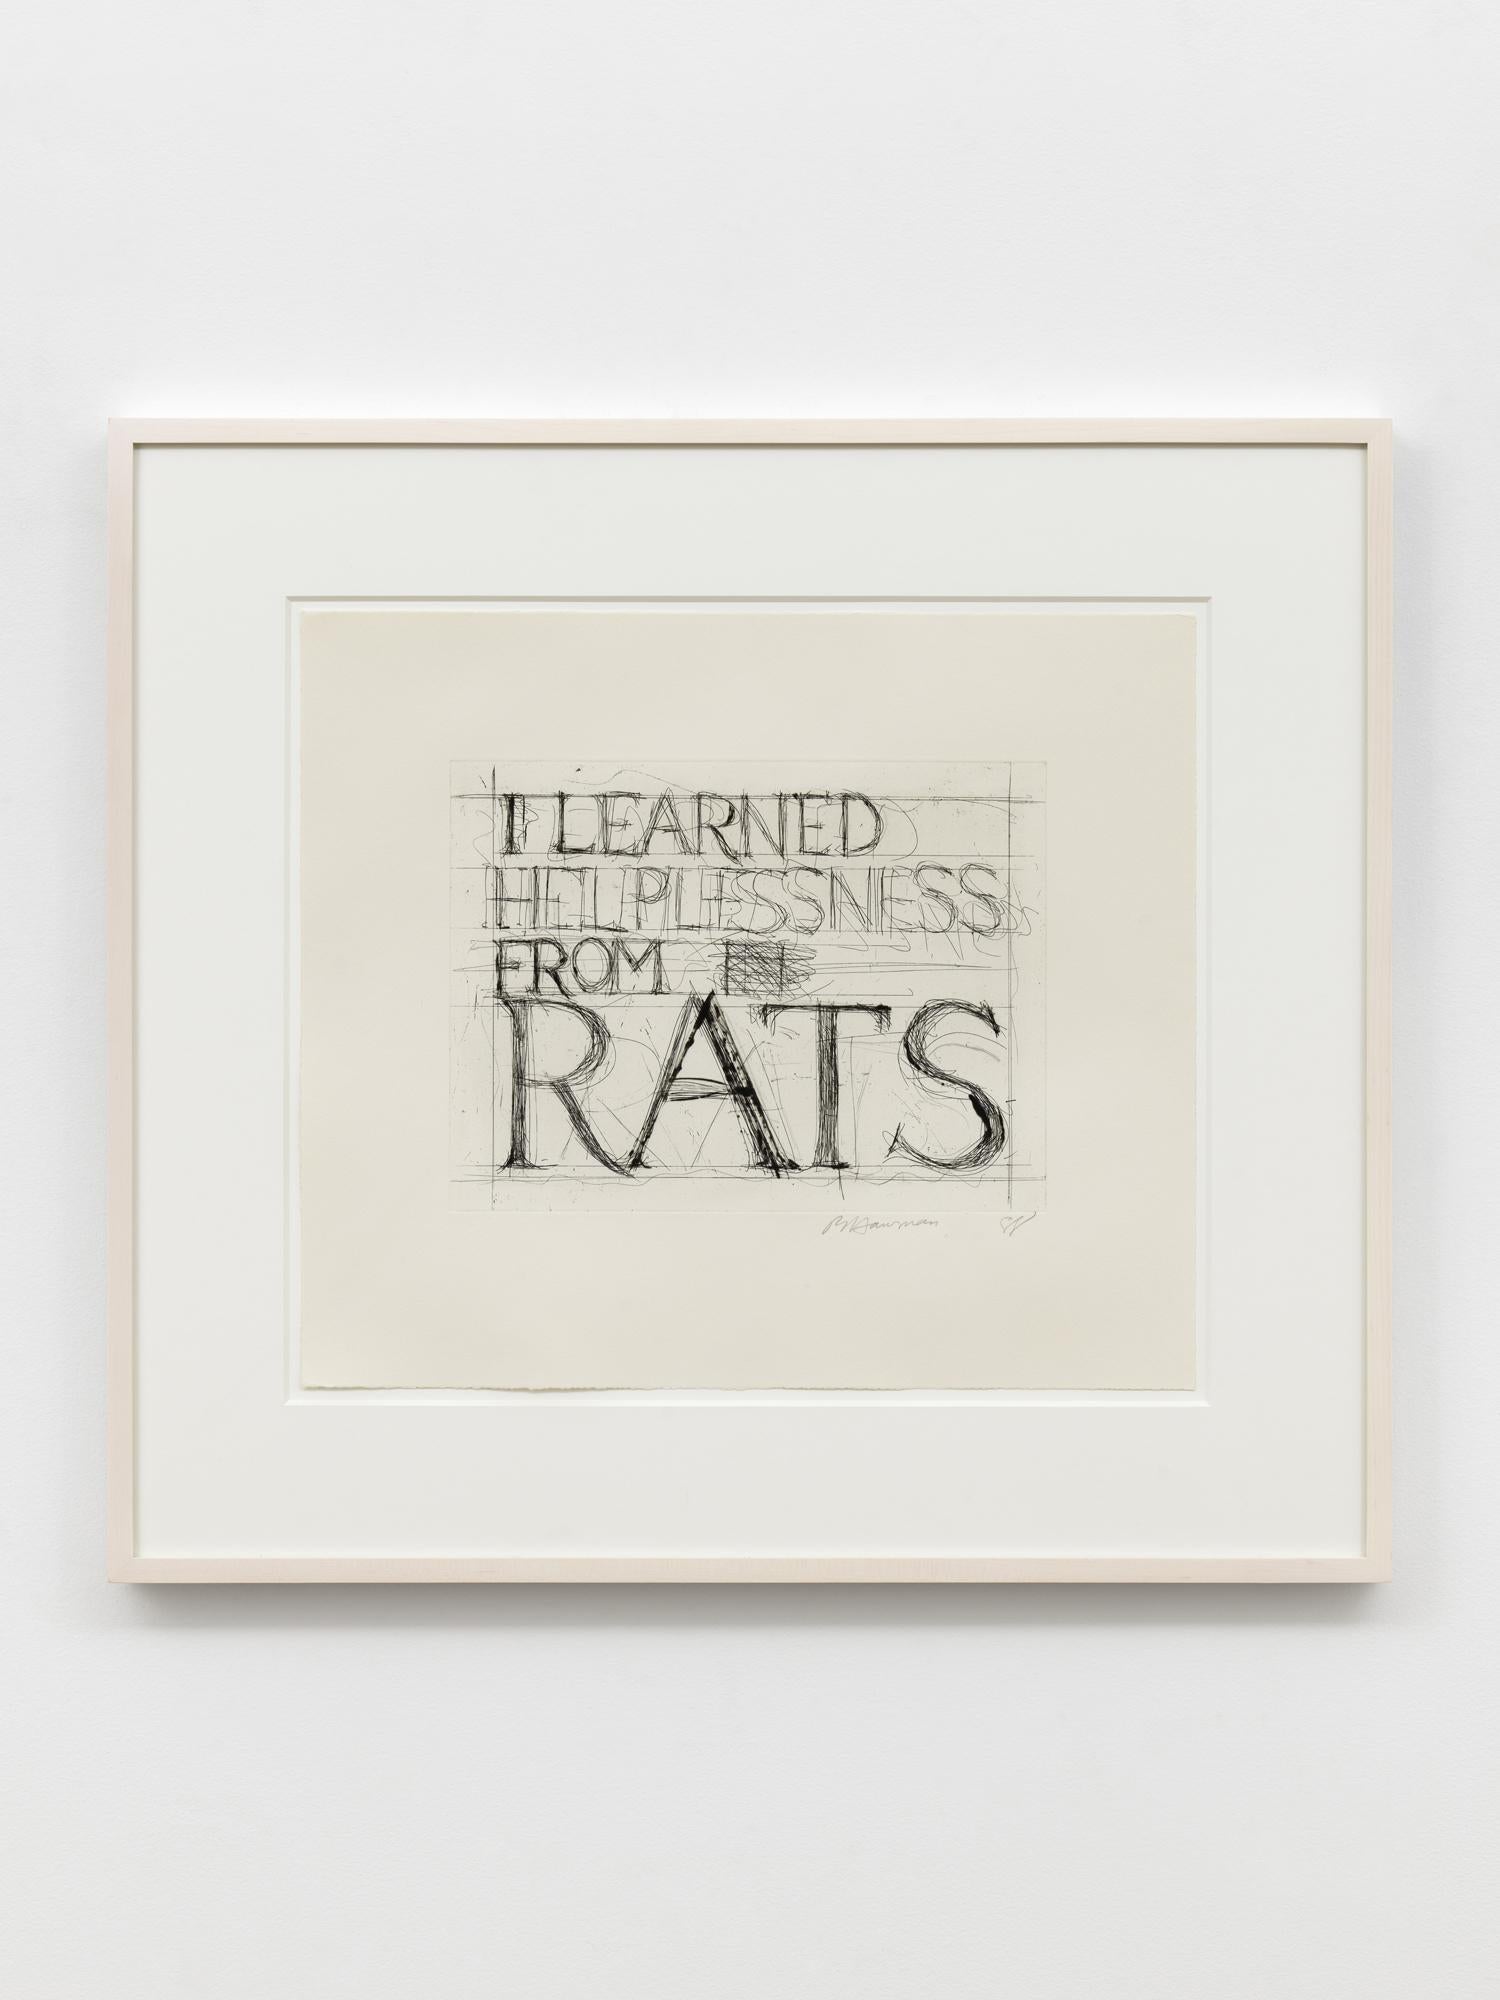 Ich habe Hilfelosigkeit von Ratten gelernt – Print von Bruce Nauman